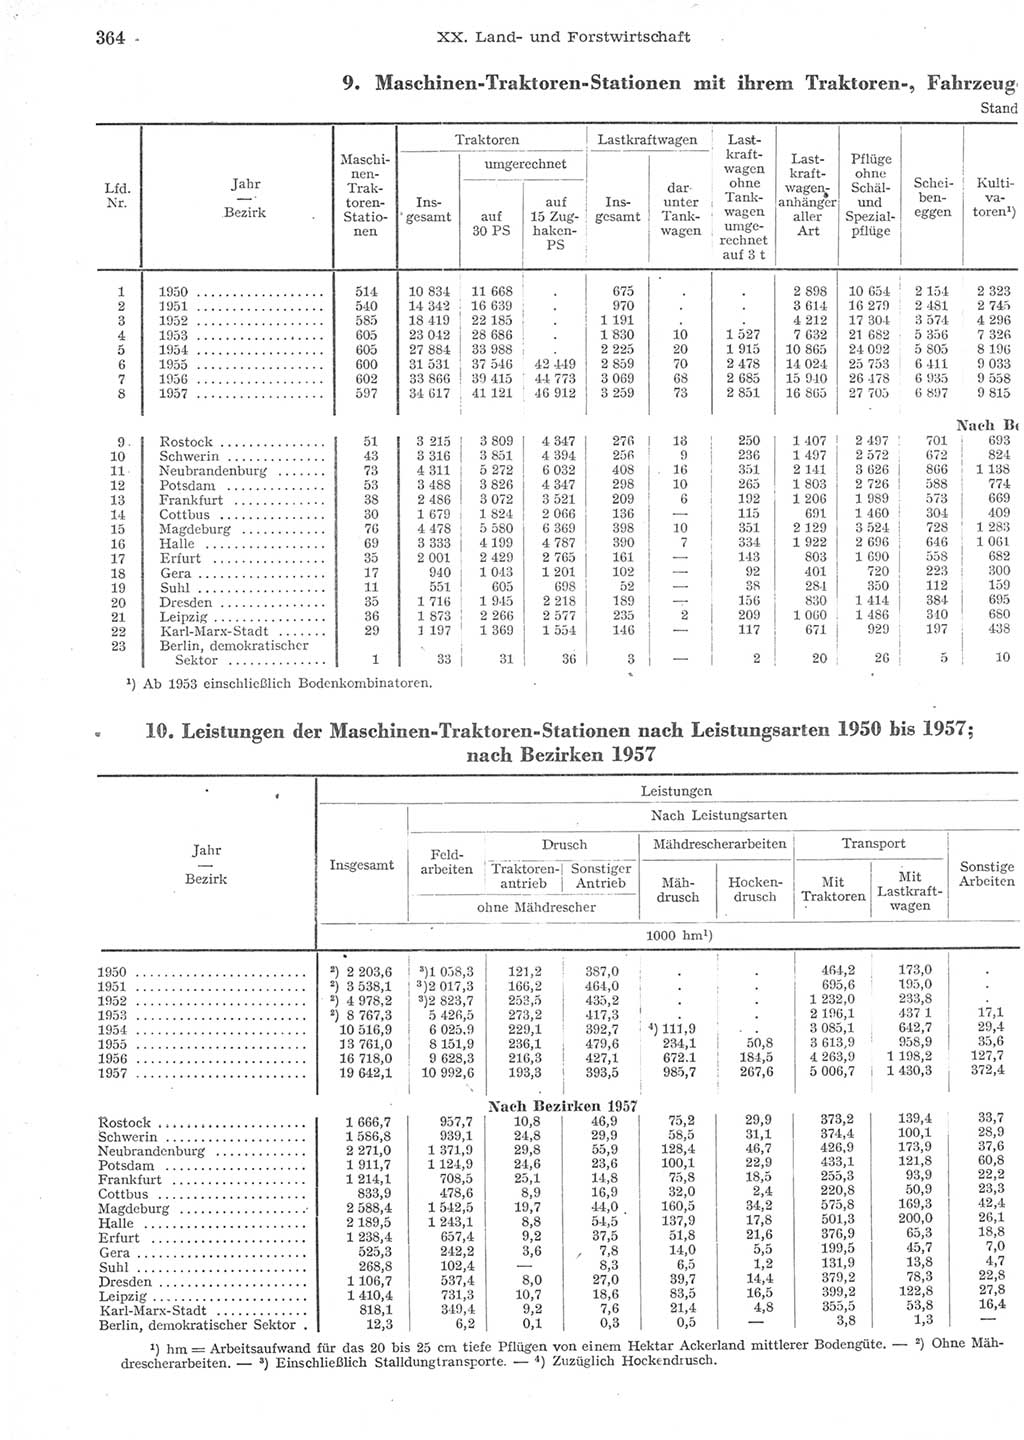 Statistisches Jahrbuch der Deutschen Demokratischen Republik (DDR) 1957, Seite 364 (Stat. Jb. DDR 1957, S. 364)